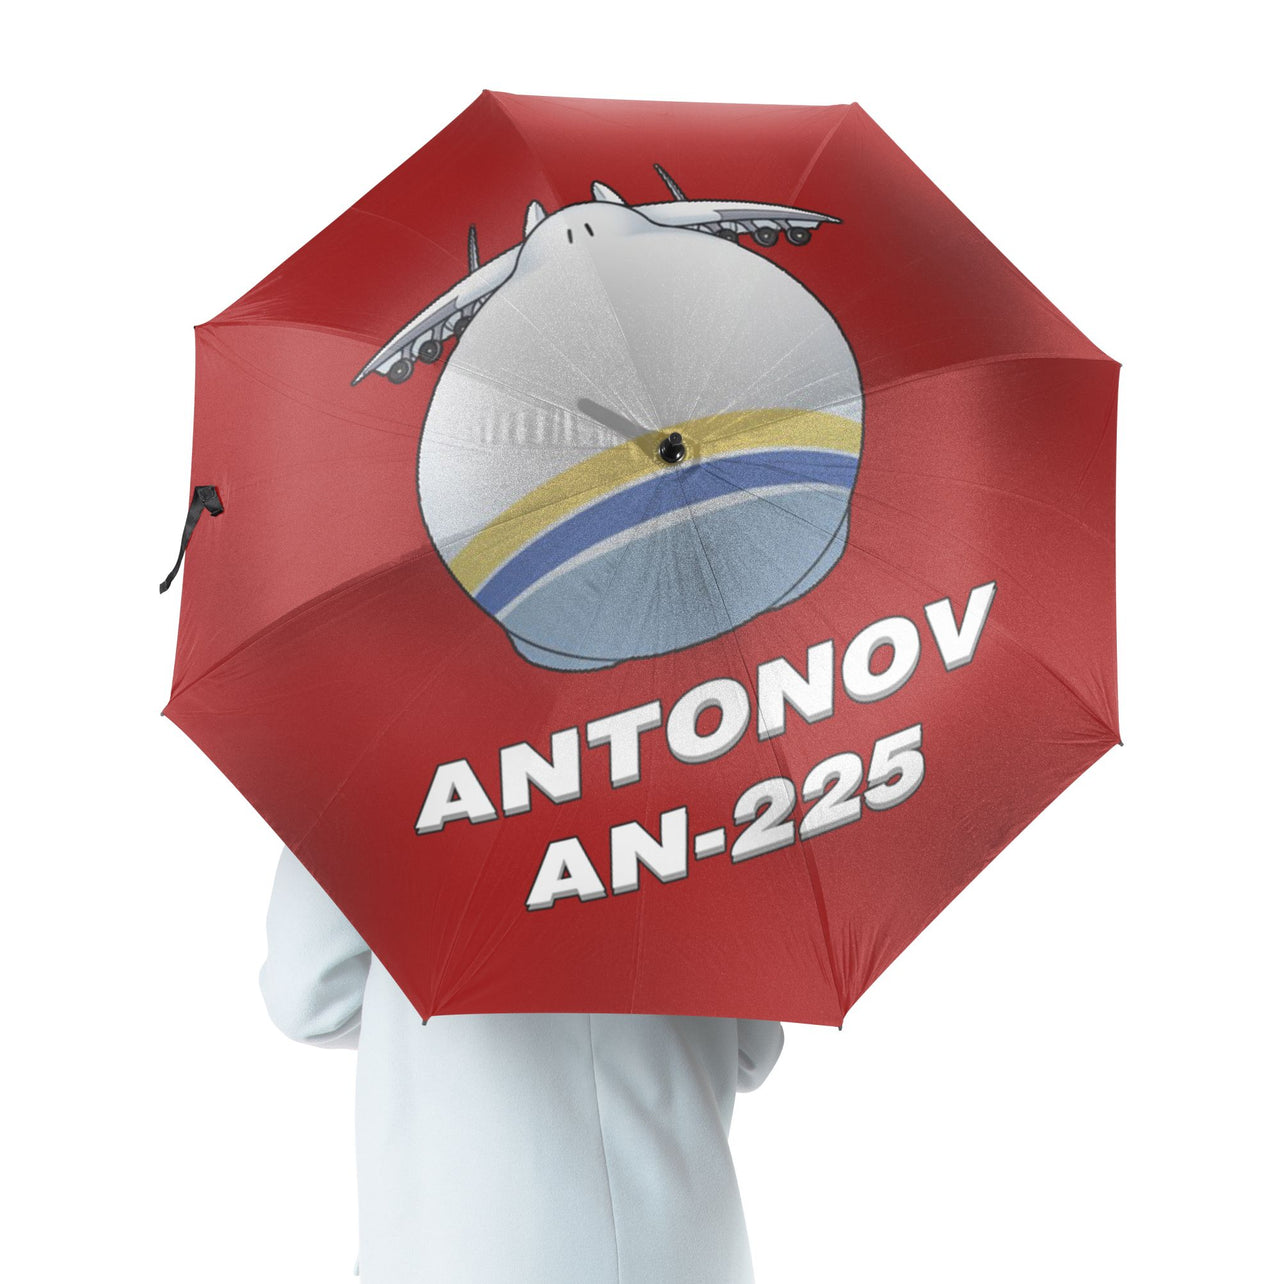 Antonov AN-225 (20) Designed Umbrella